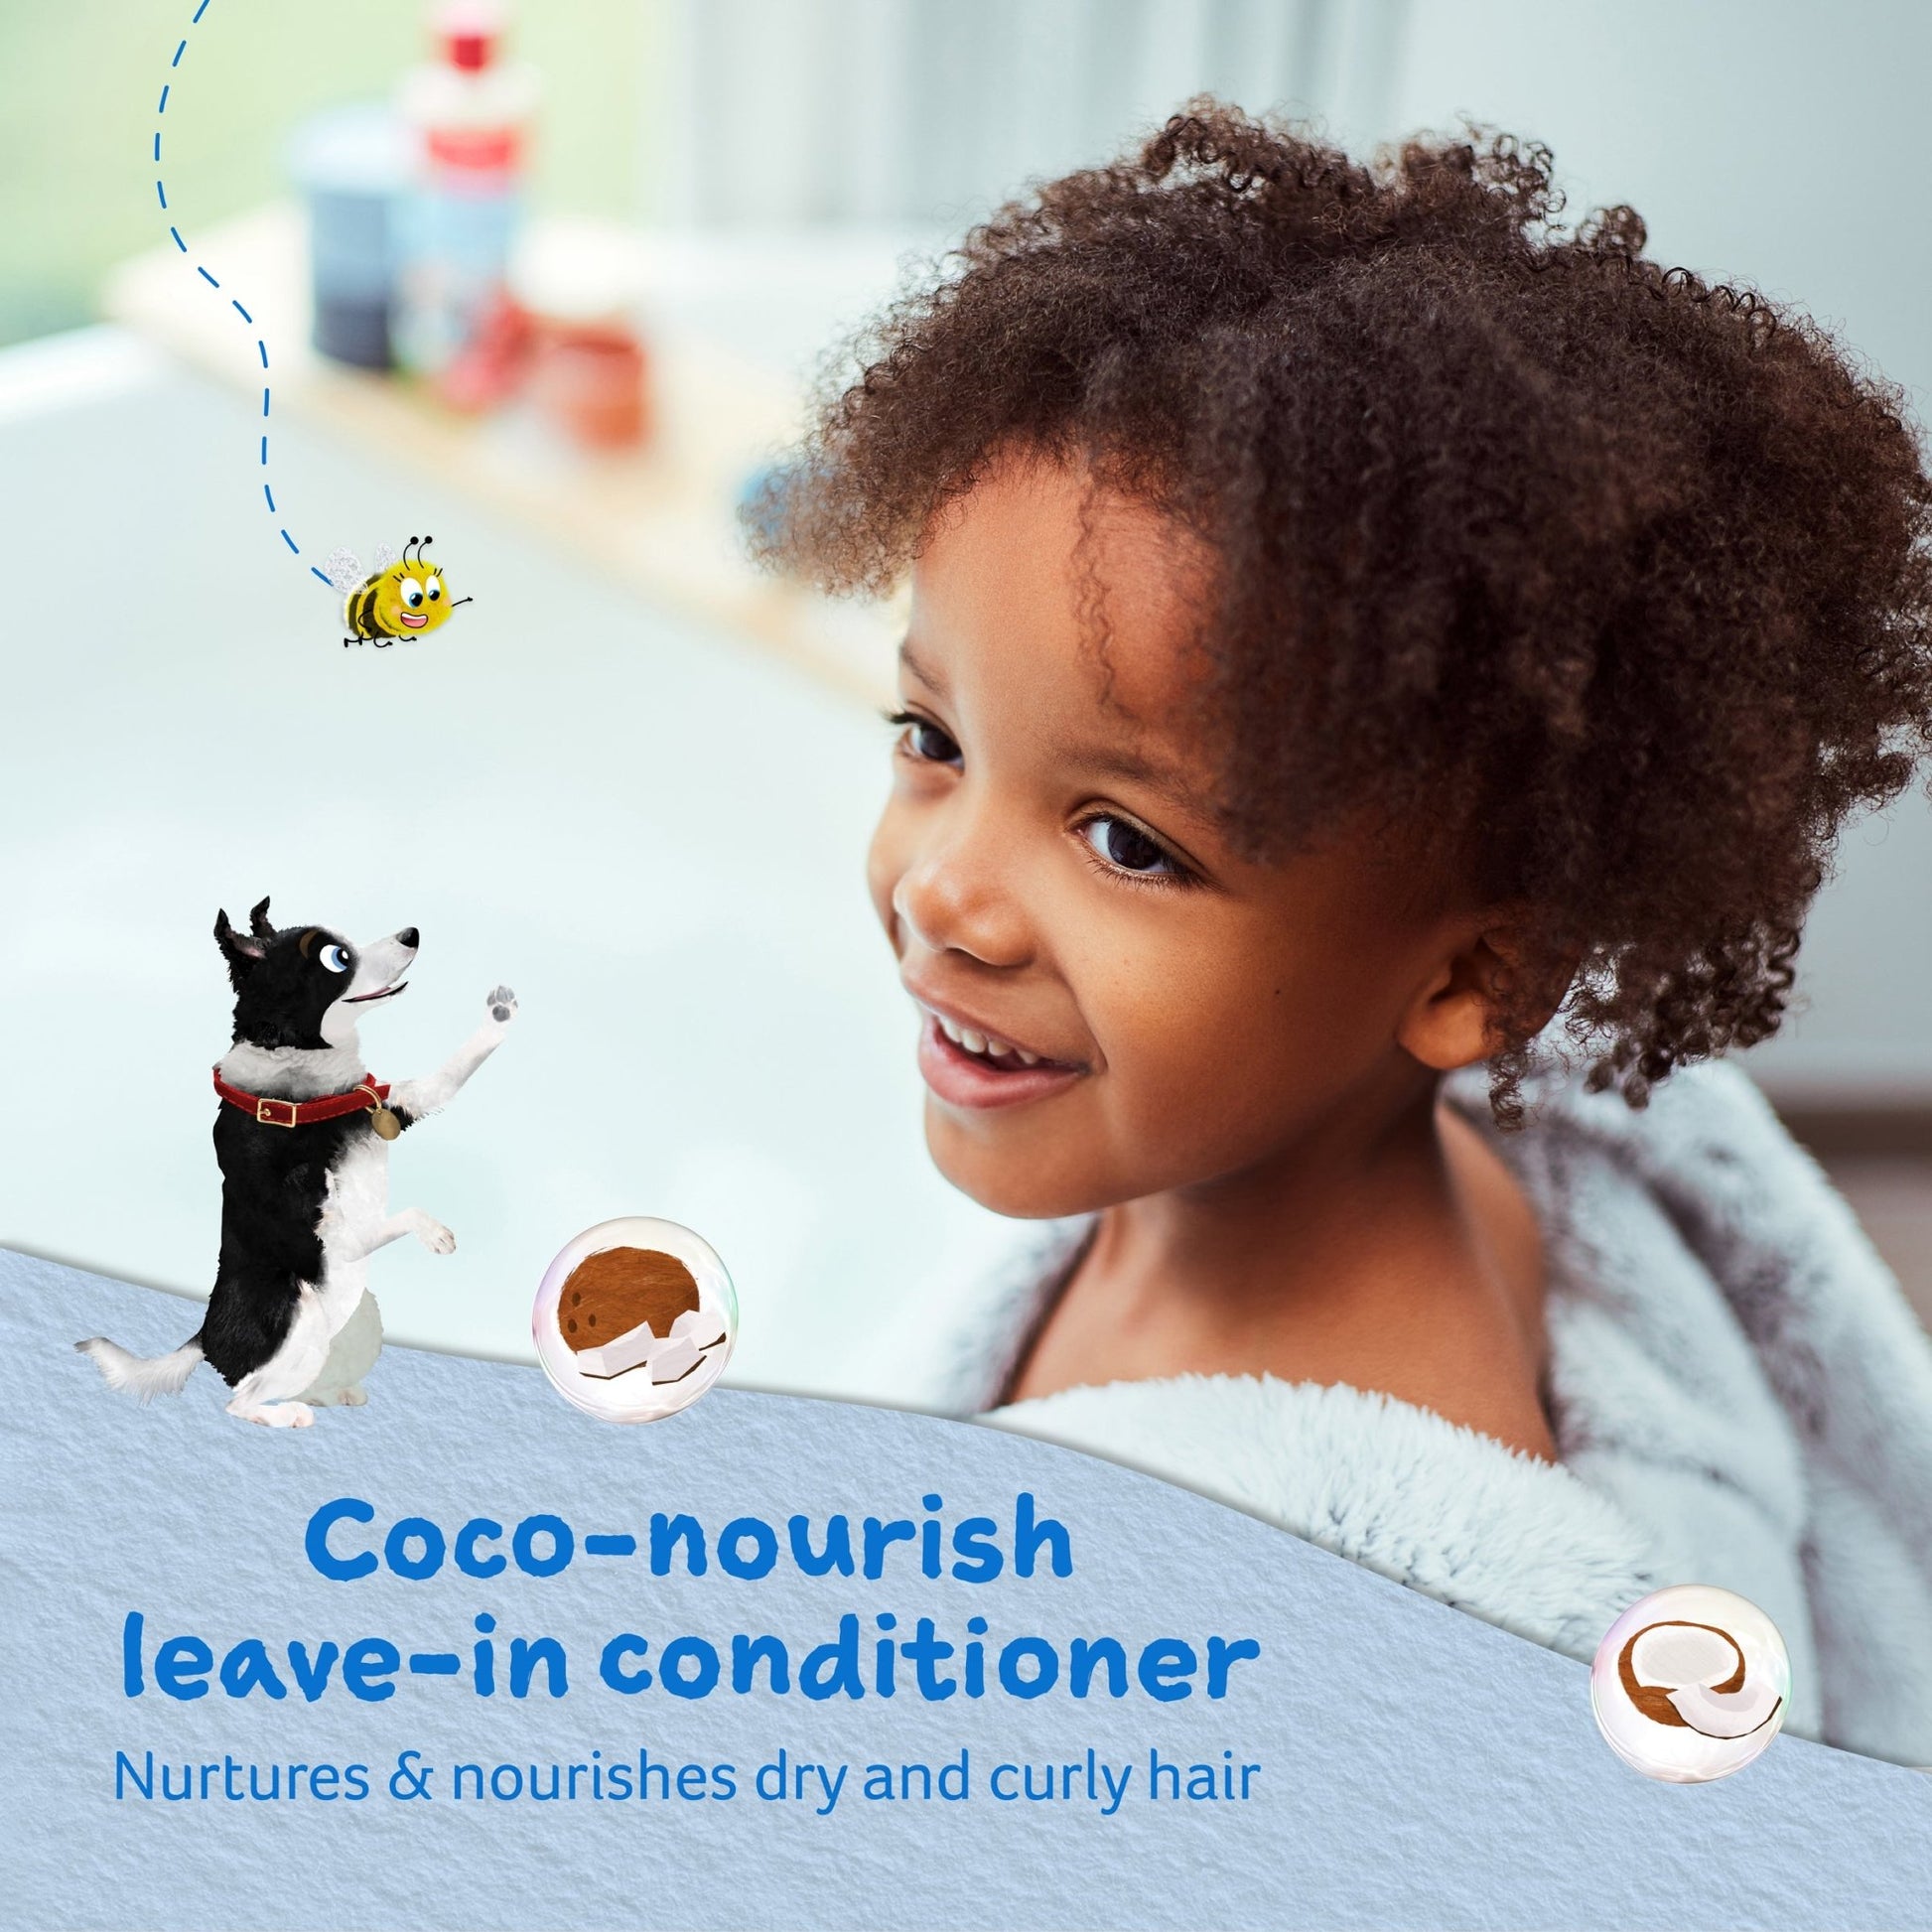 Childs Farm coco-nourish leave in conditioner organic coconut